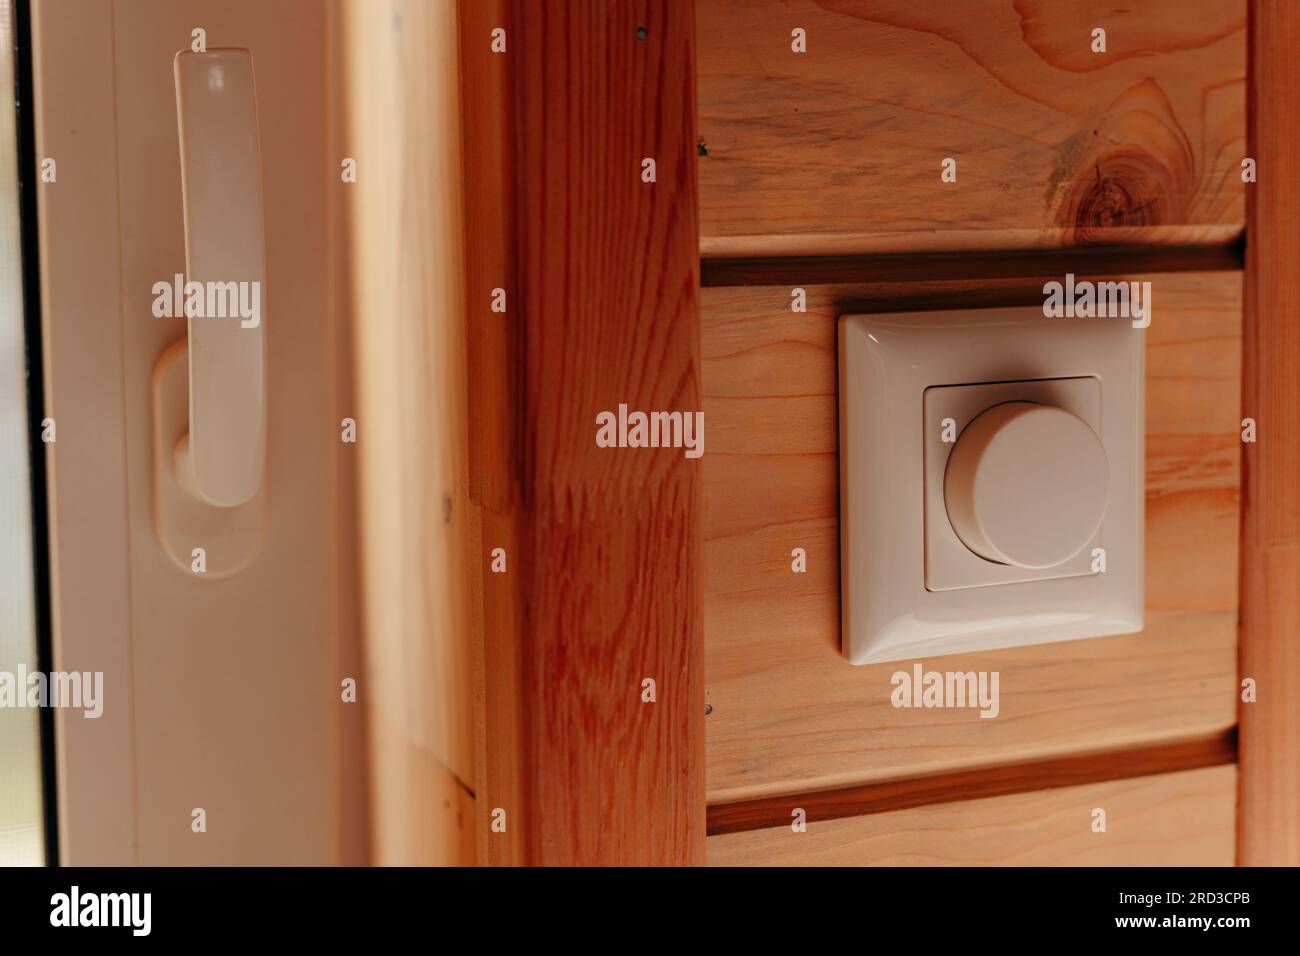 Luce interruttore dimmer elettrico ravvicinato per il controllo della luminosità regolabile in una casa di legno Foto Stock